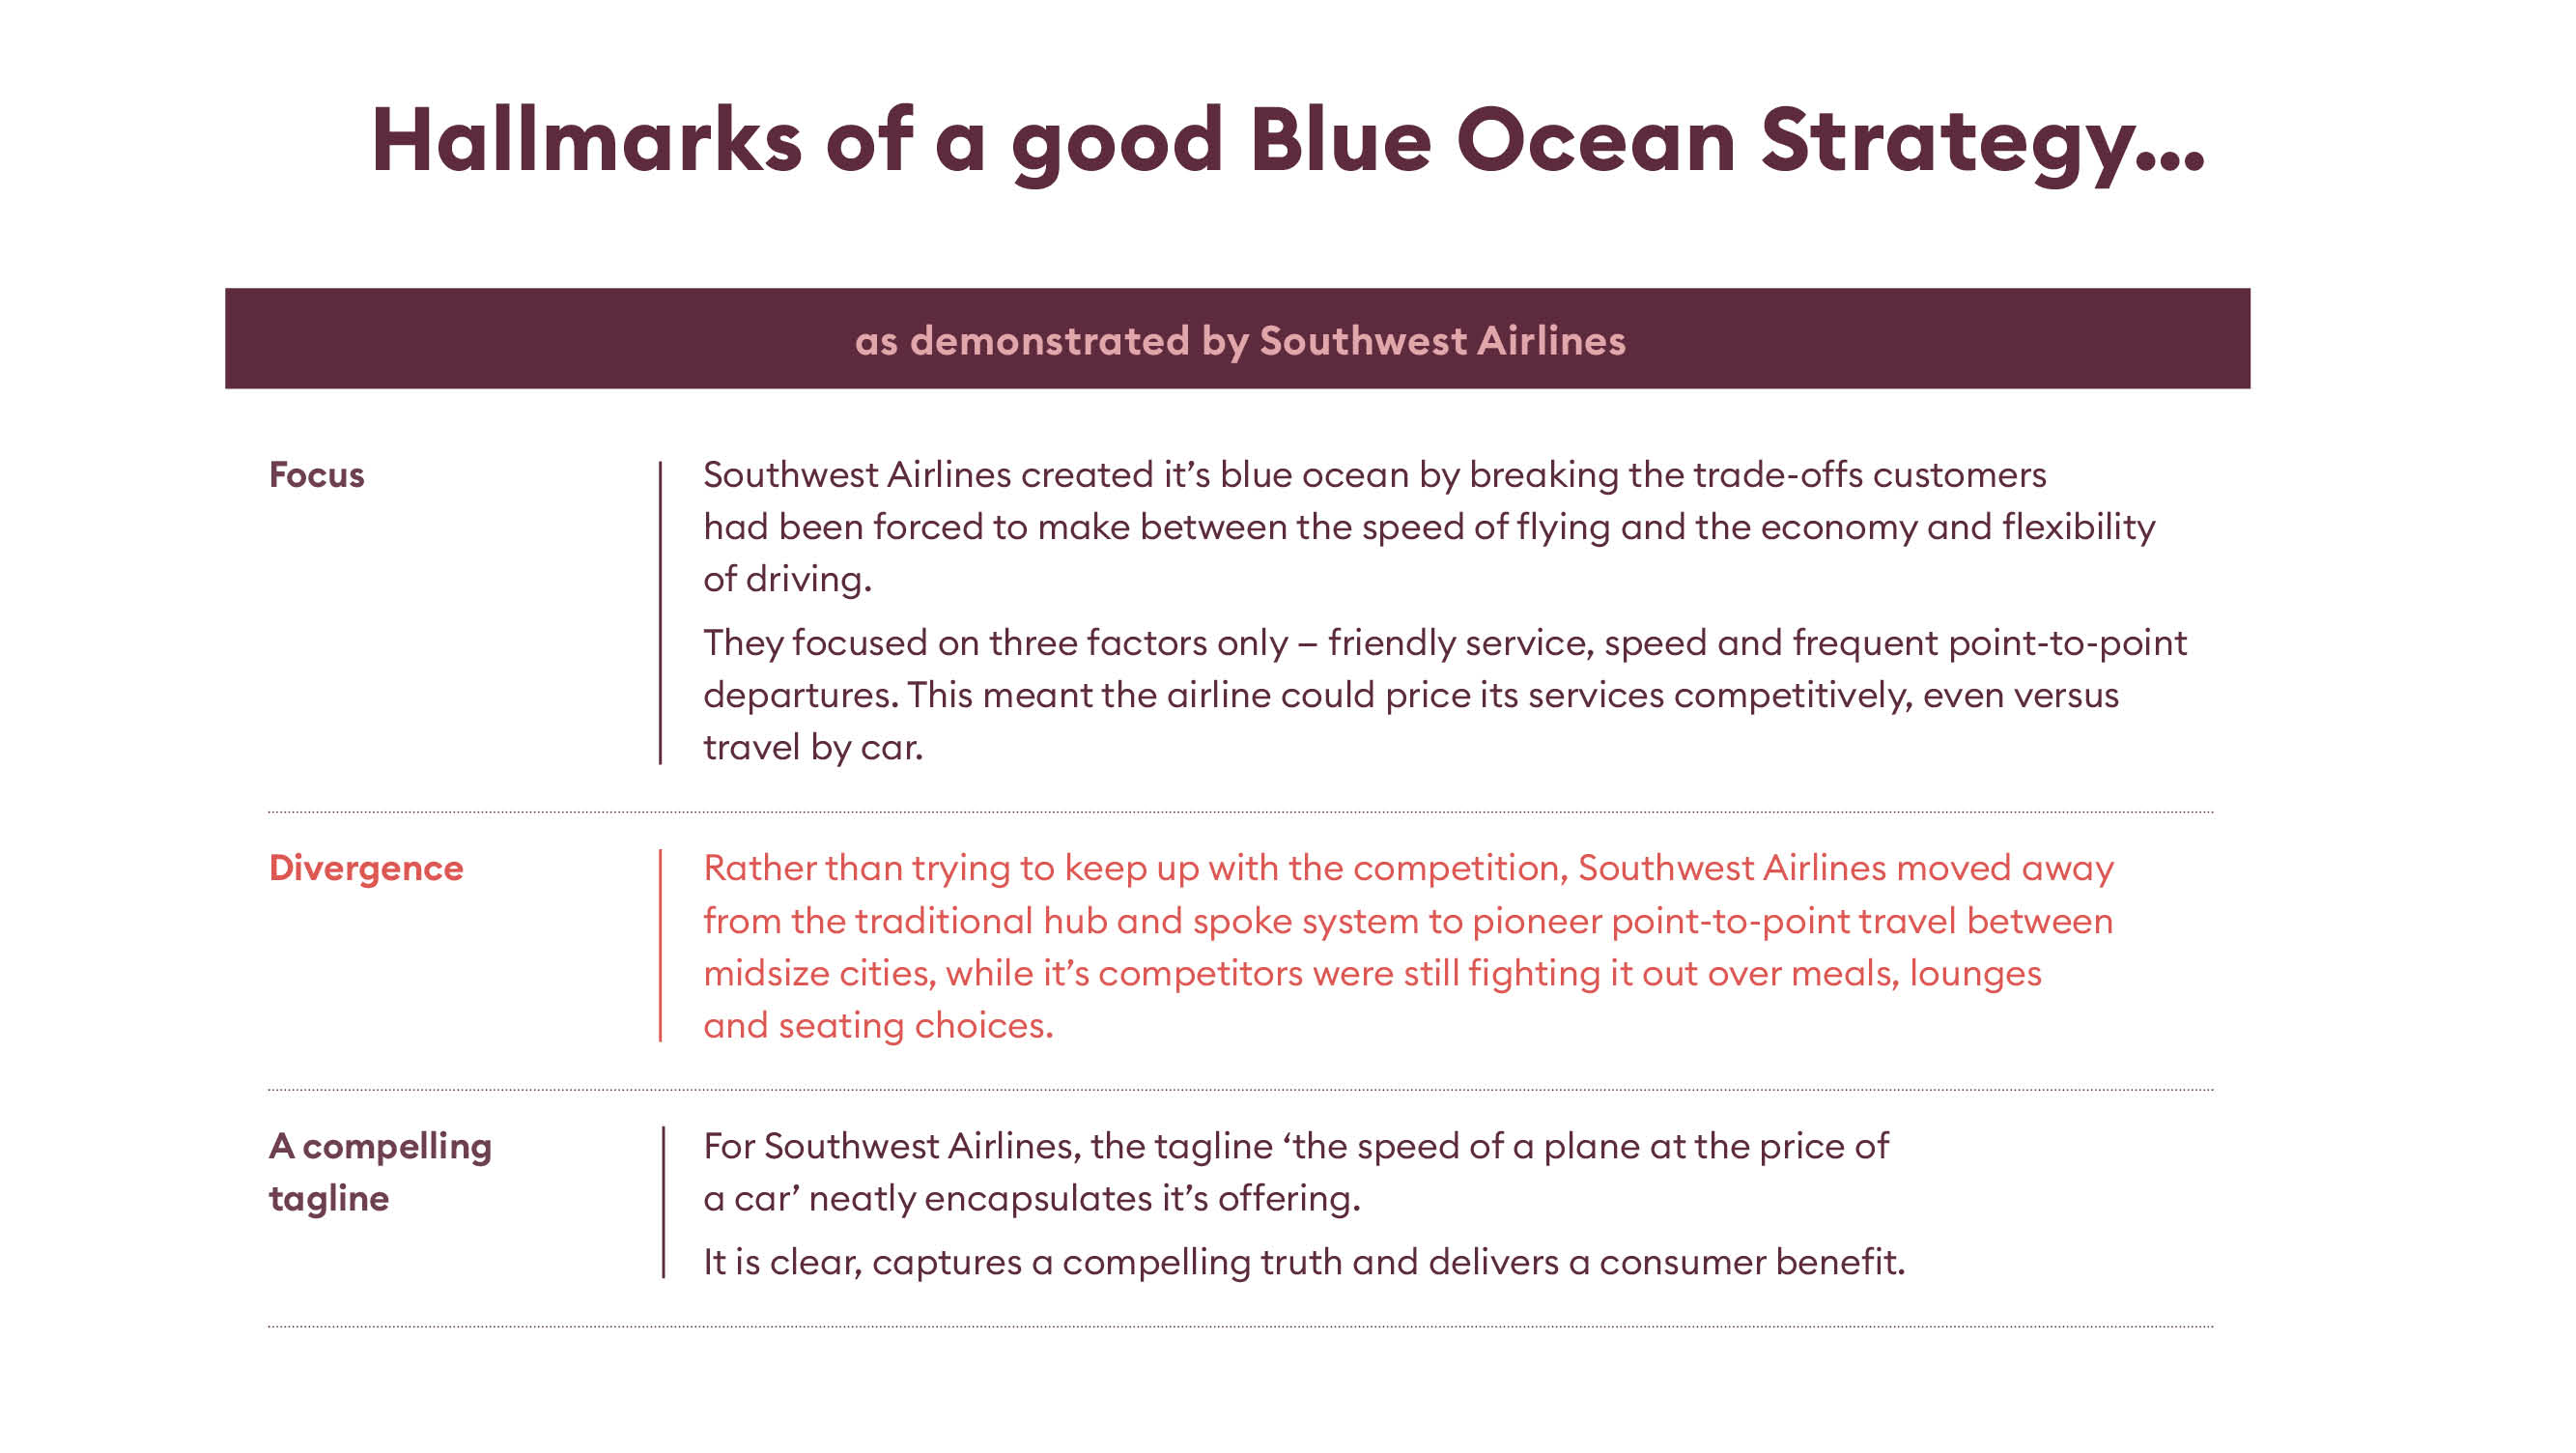 FTL_Module 8_Hallmarks of Blue Ocean Strategy